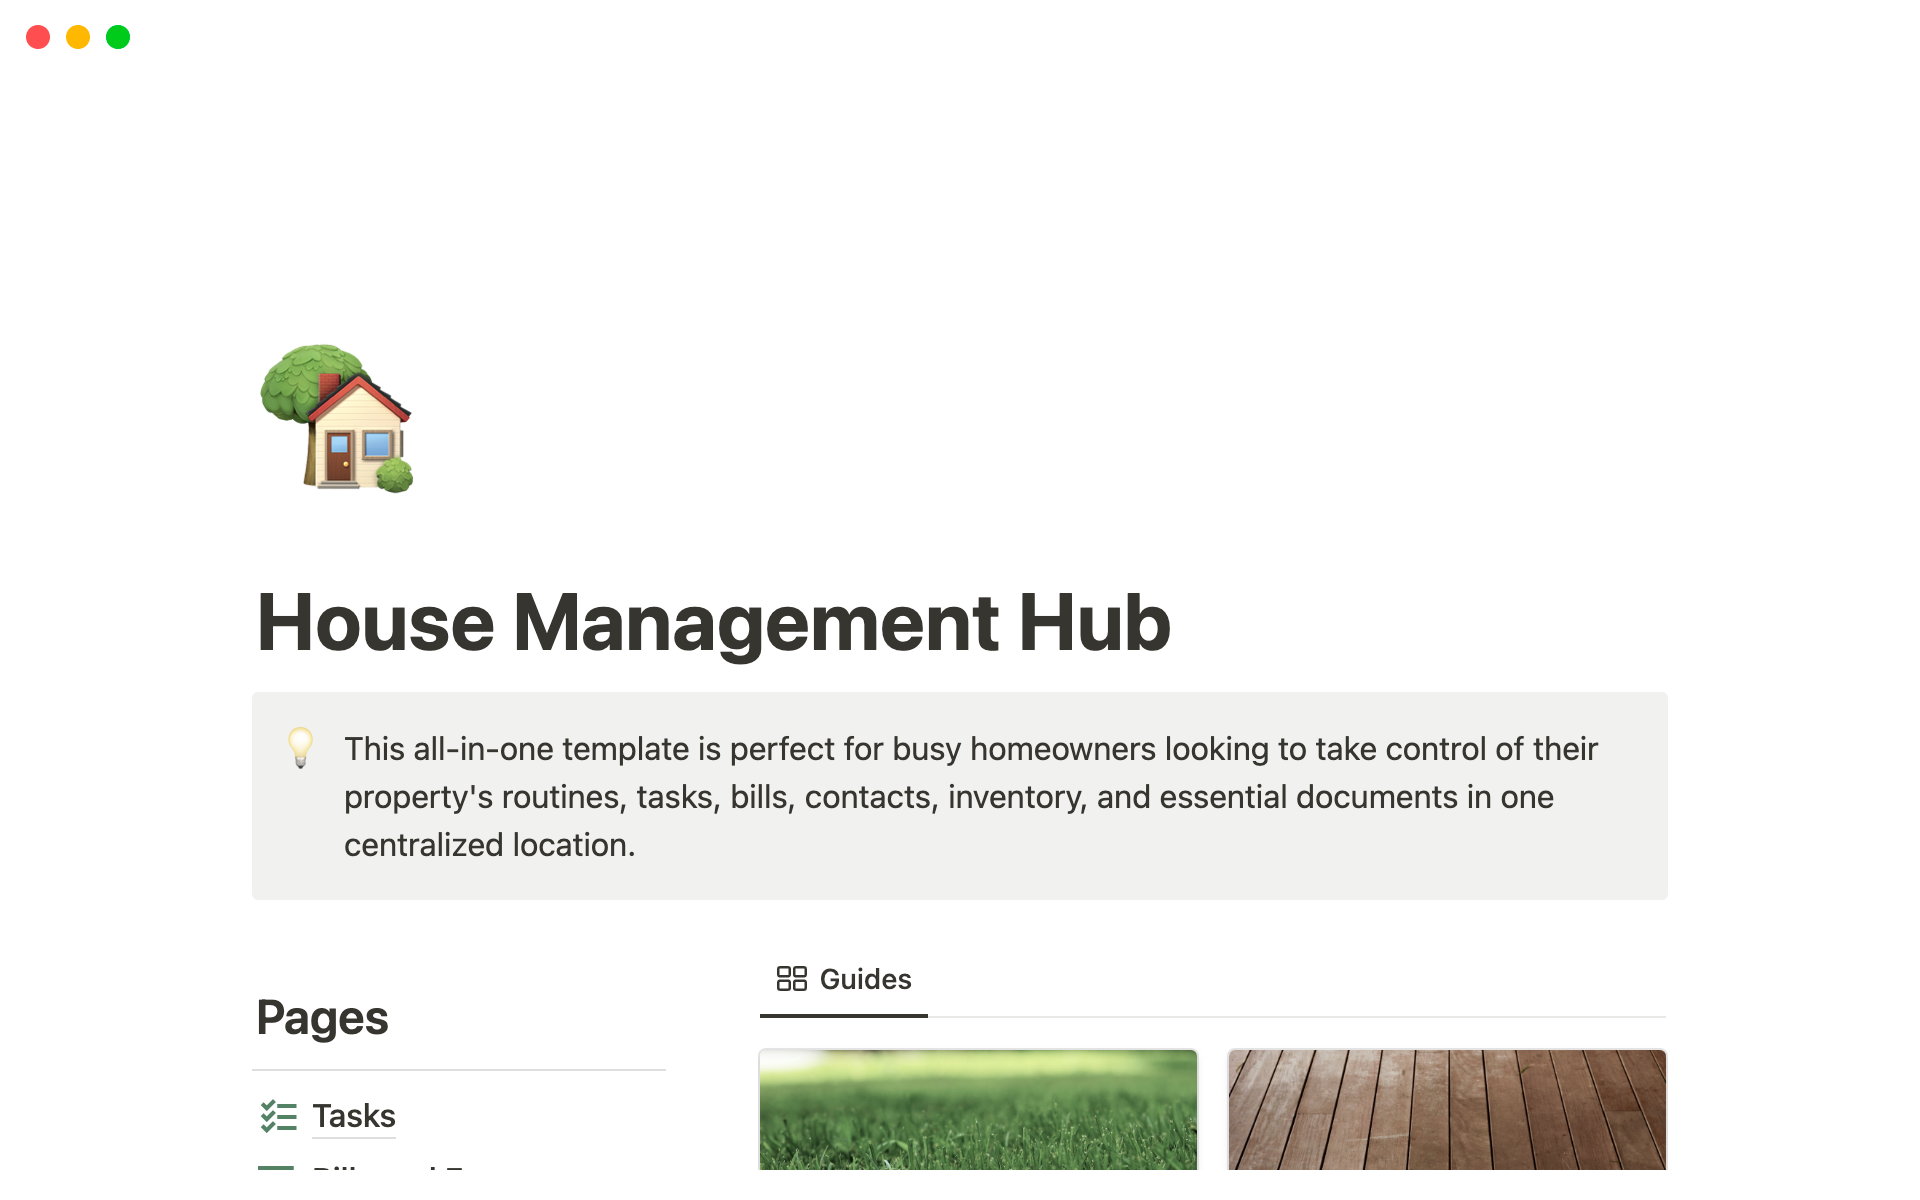 Aperçu du modèle de House Management Hub